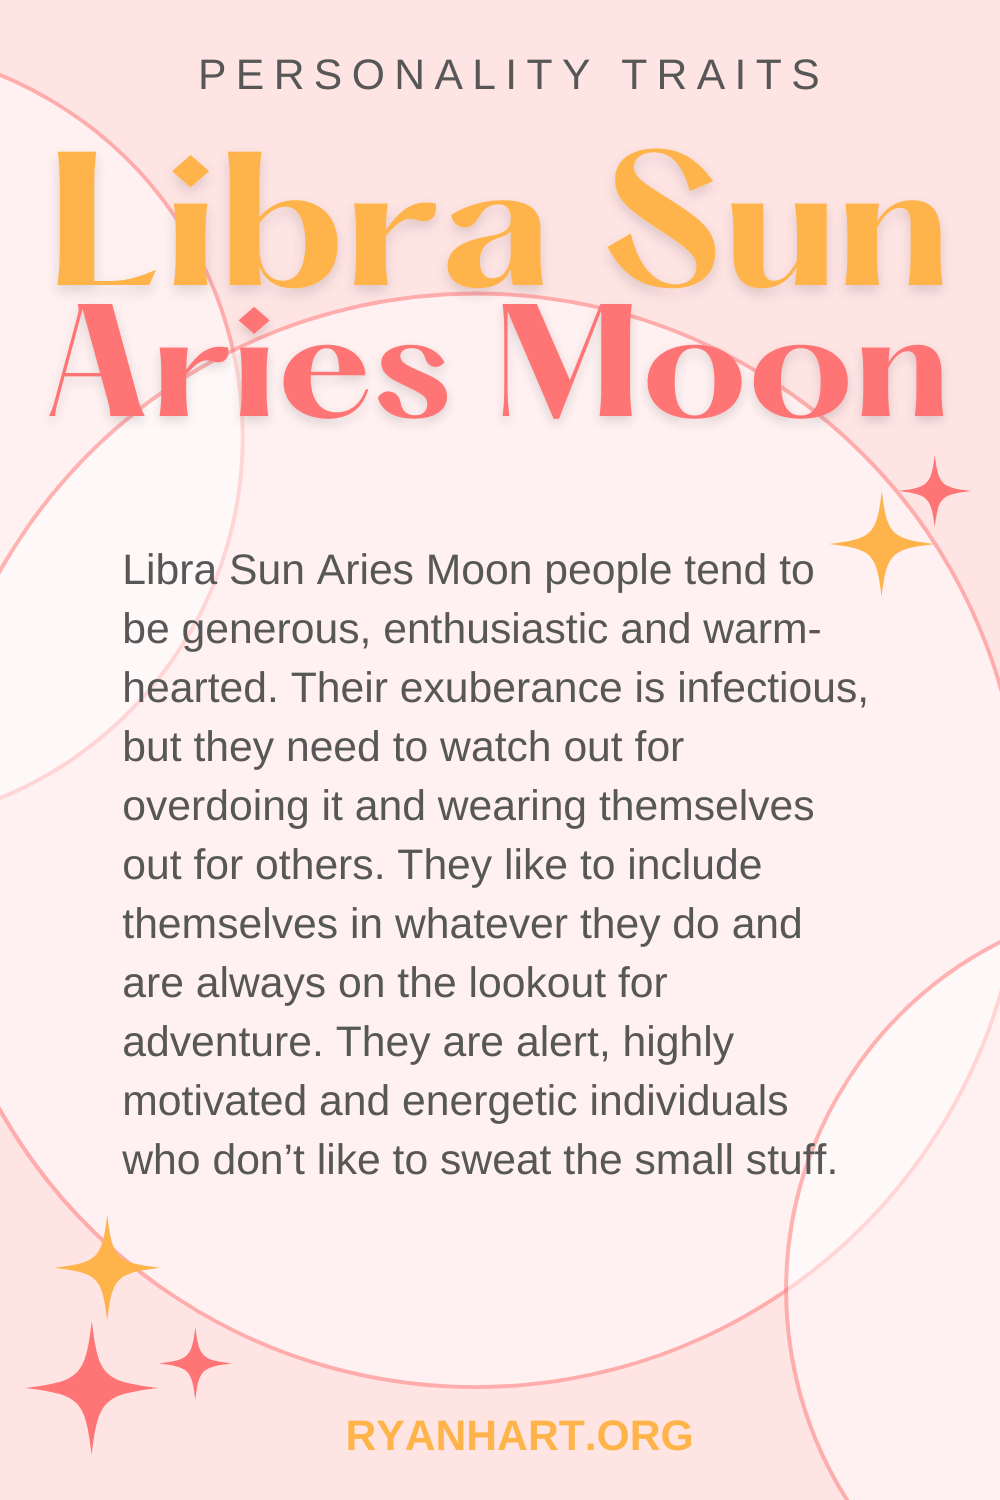 Libra Sun Aries Moon Description